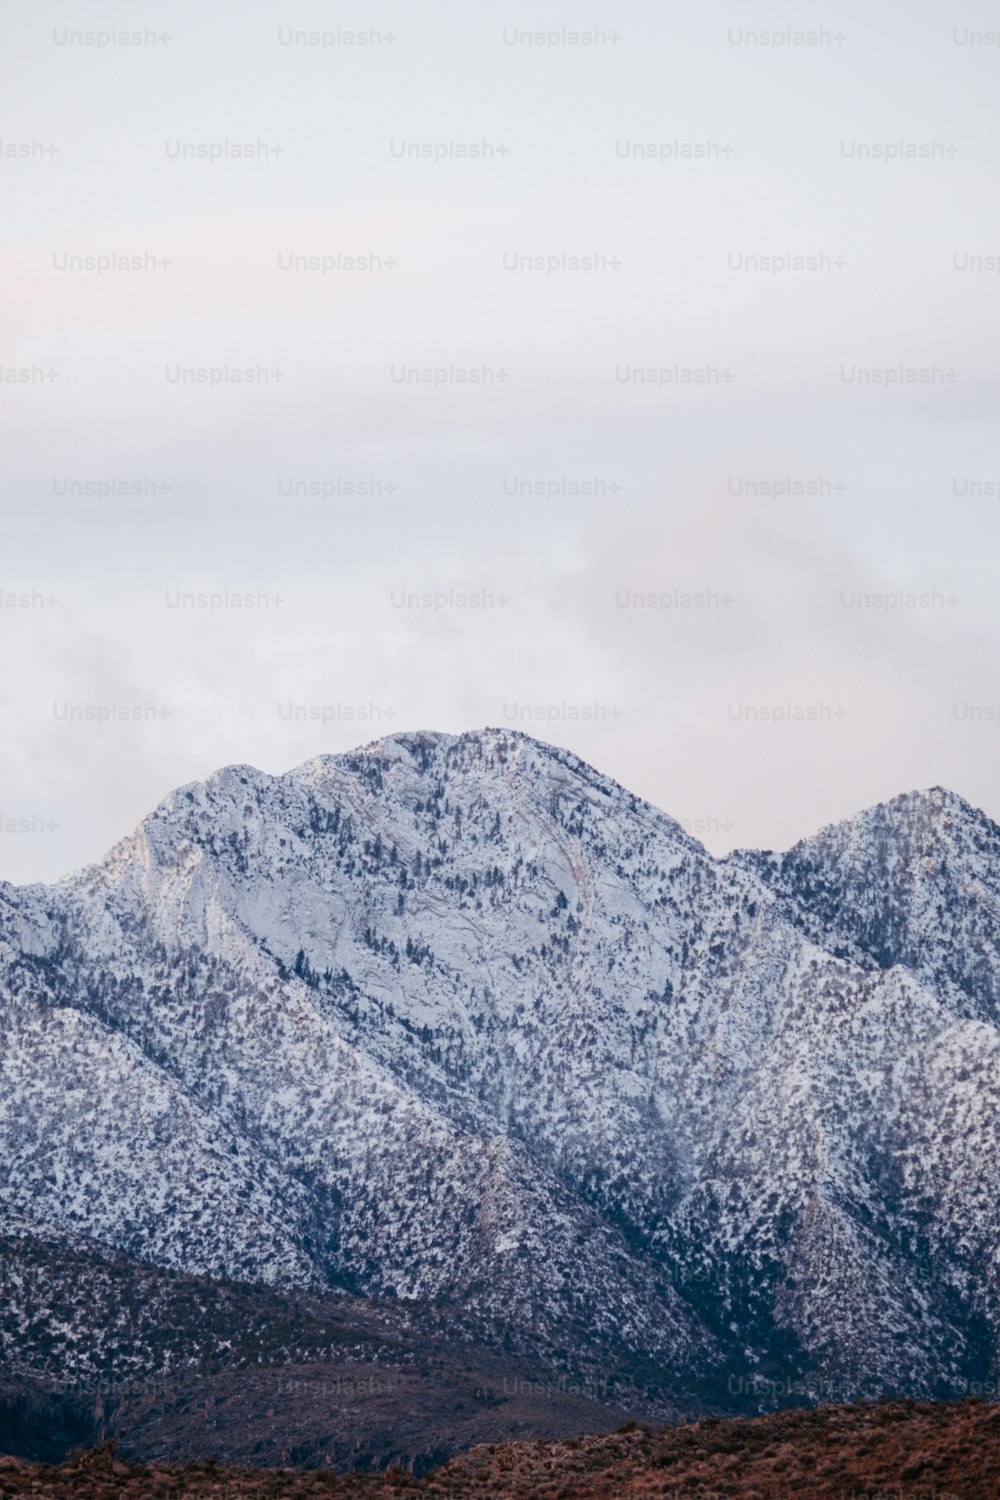 Una cadena montañosa cubierta de nieve en invierno